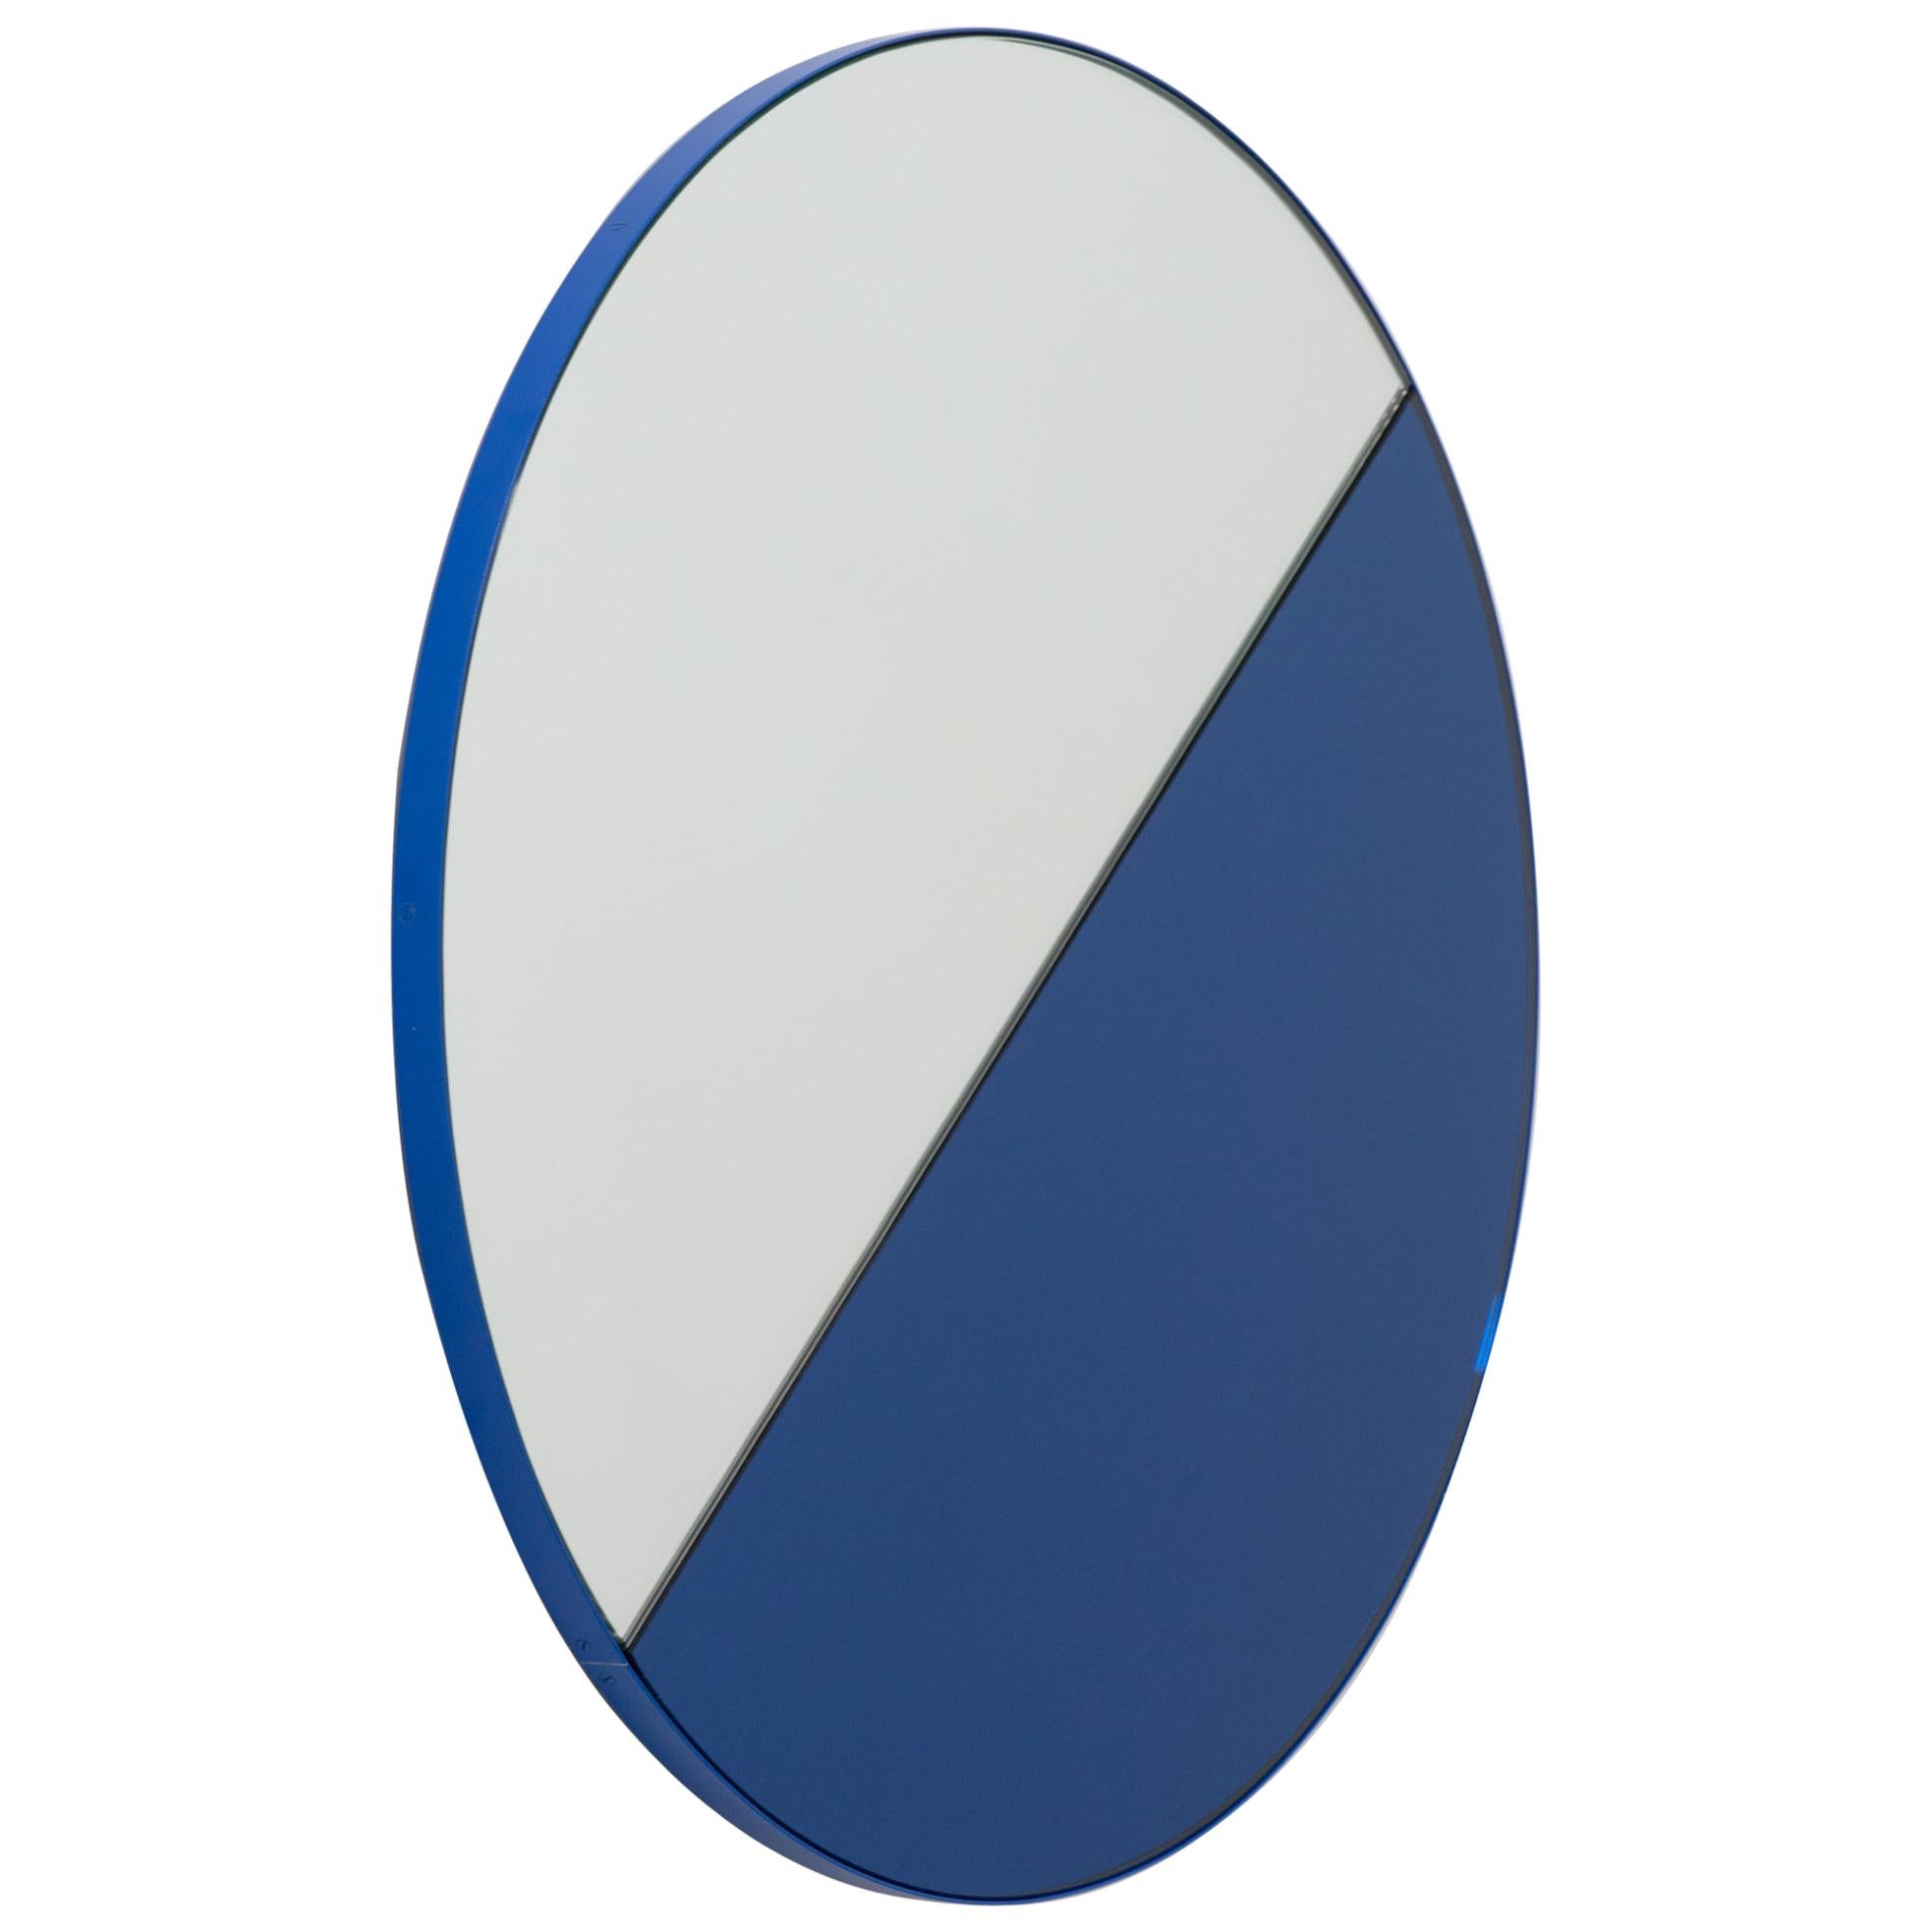 Orbis Dualis Gemischter, blau getönter, runder Contemporary-Spiegel mit blauem Rahmen, klein